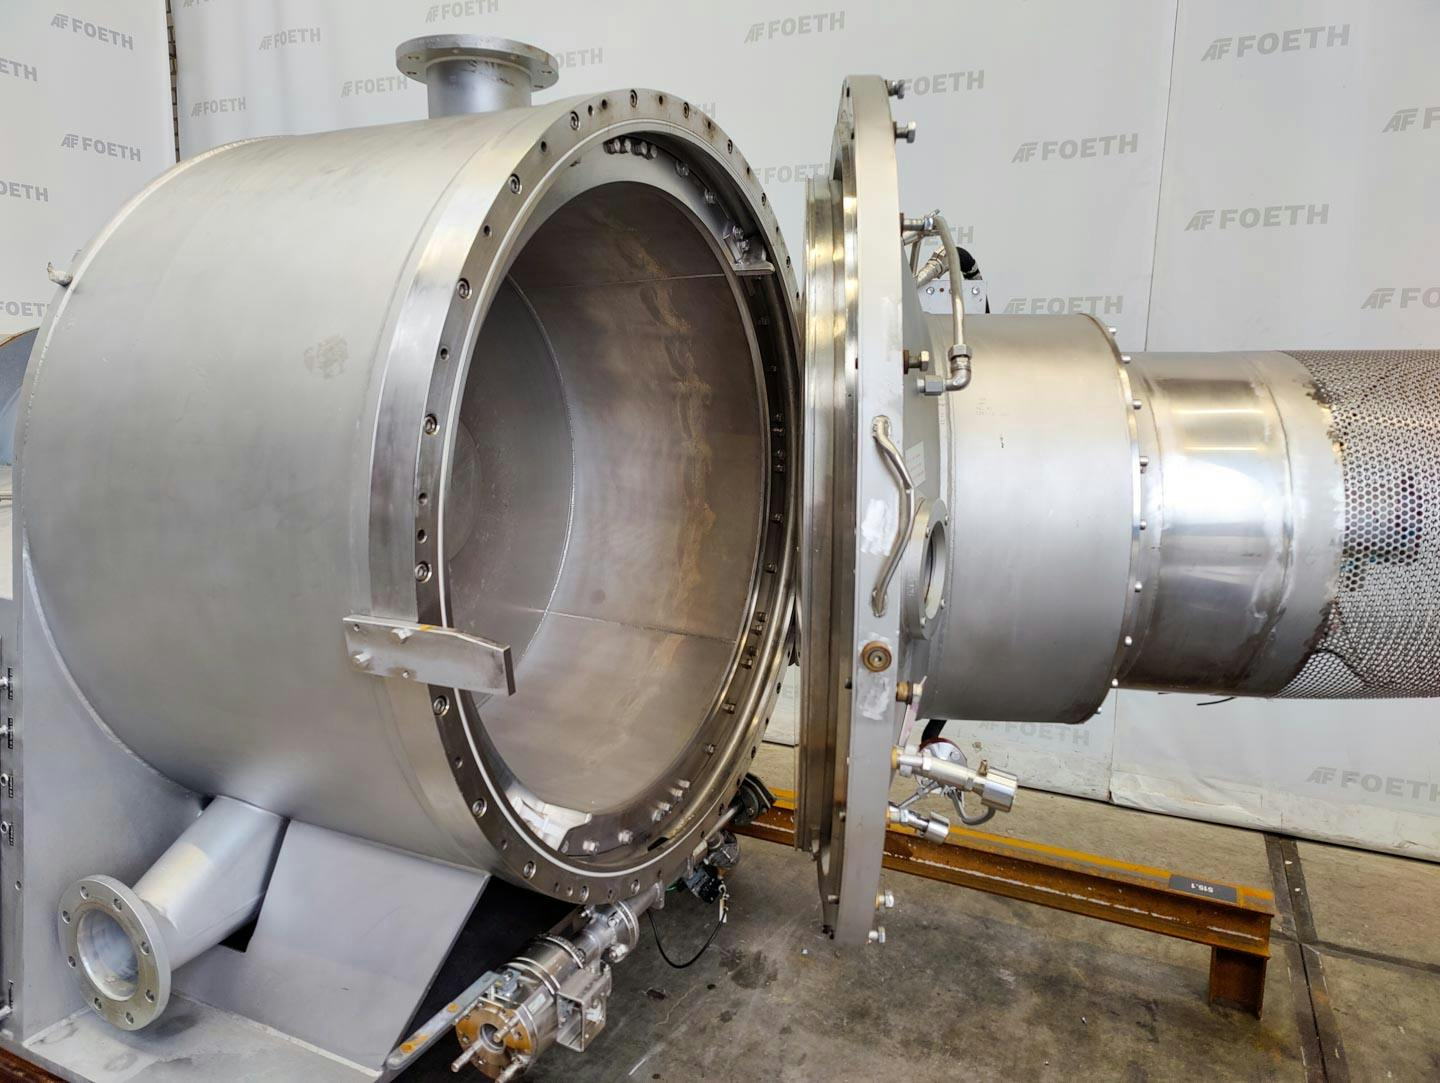 Fima Process Trockner TZT-1300 - centrifuge dryer - Košová odstredivka - image 7